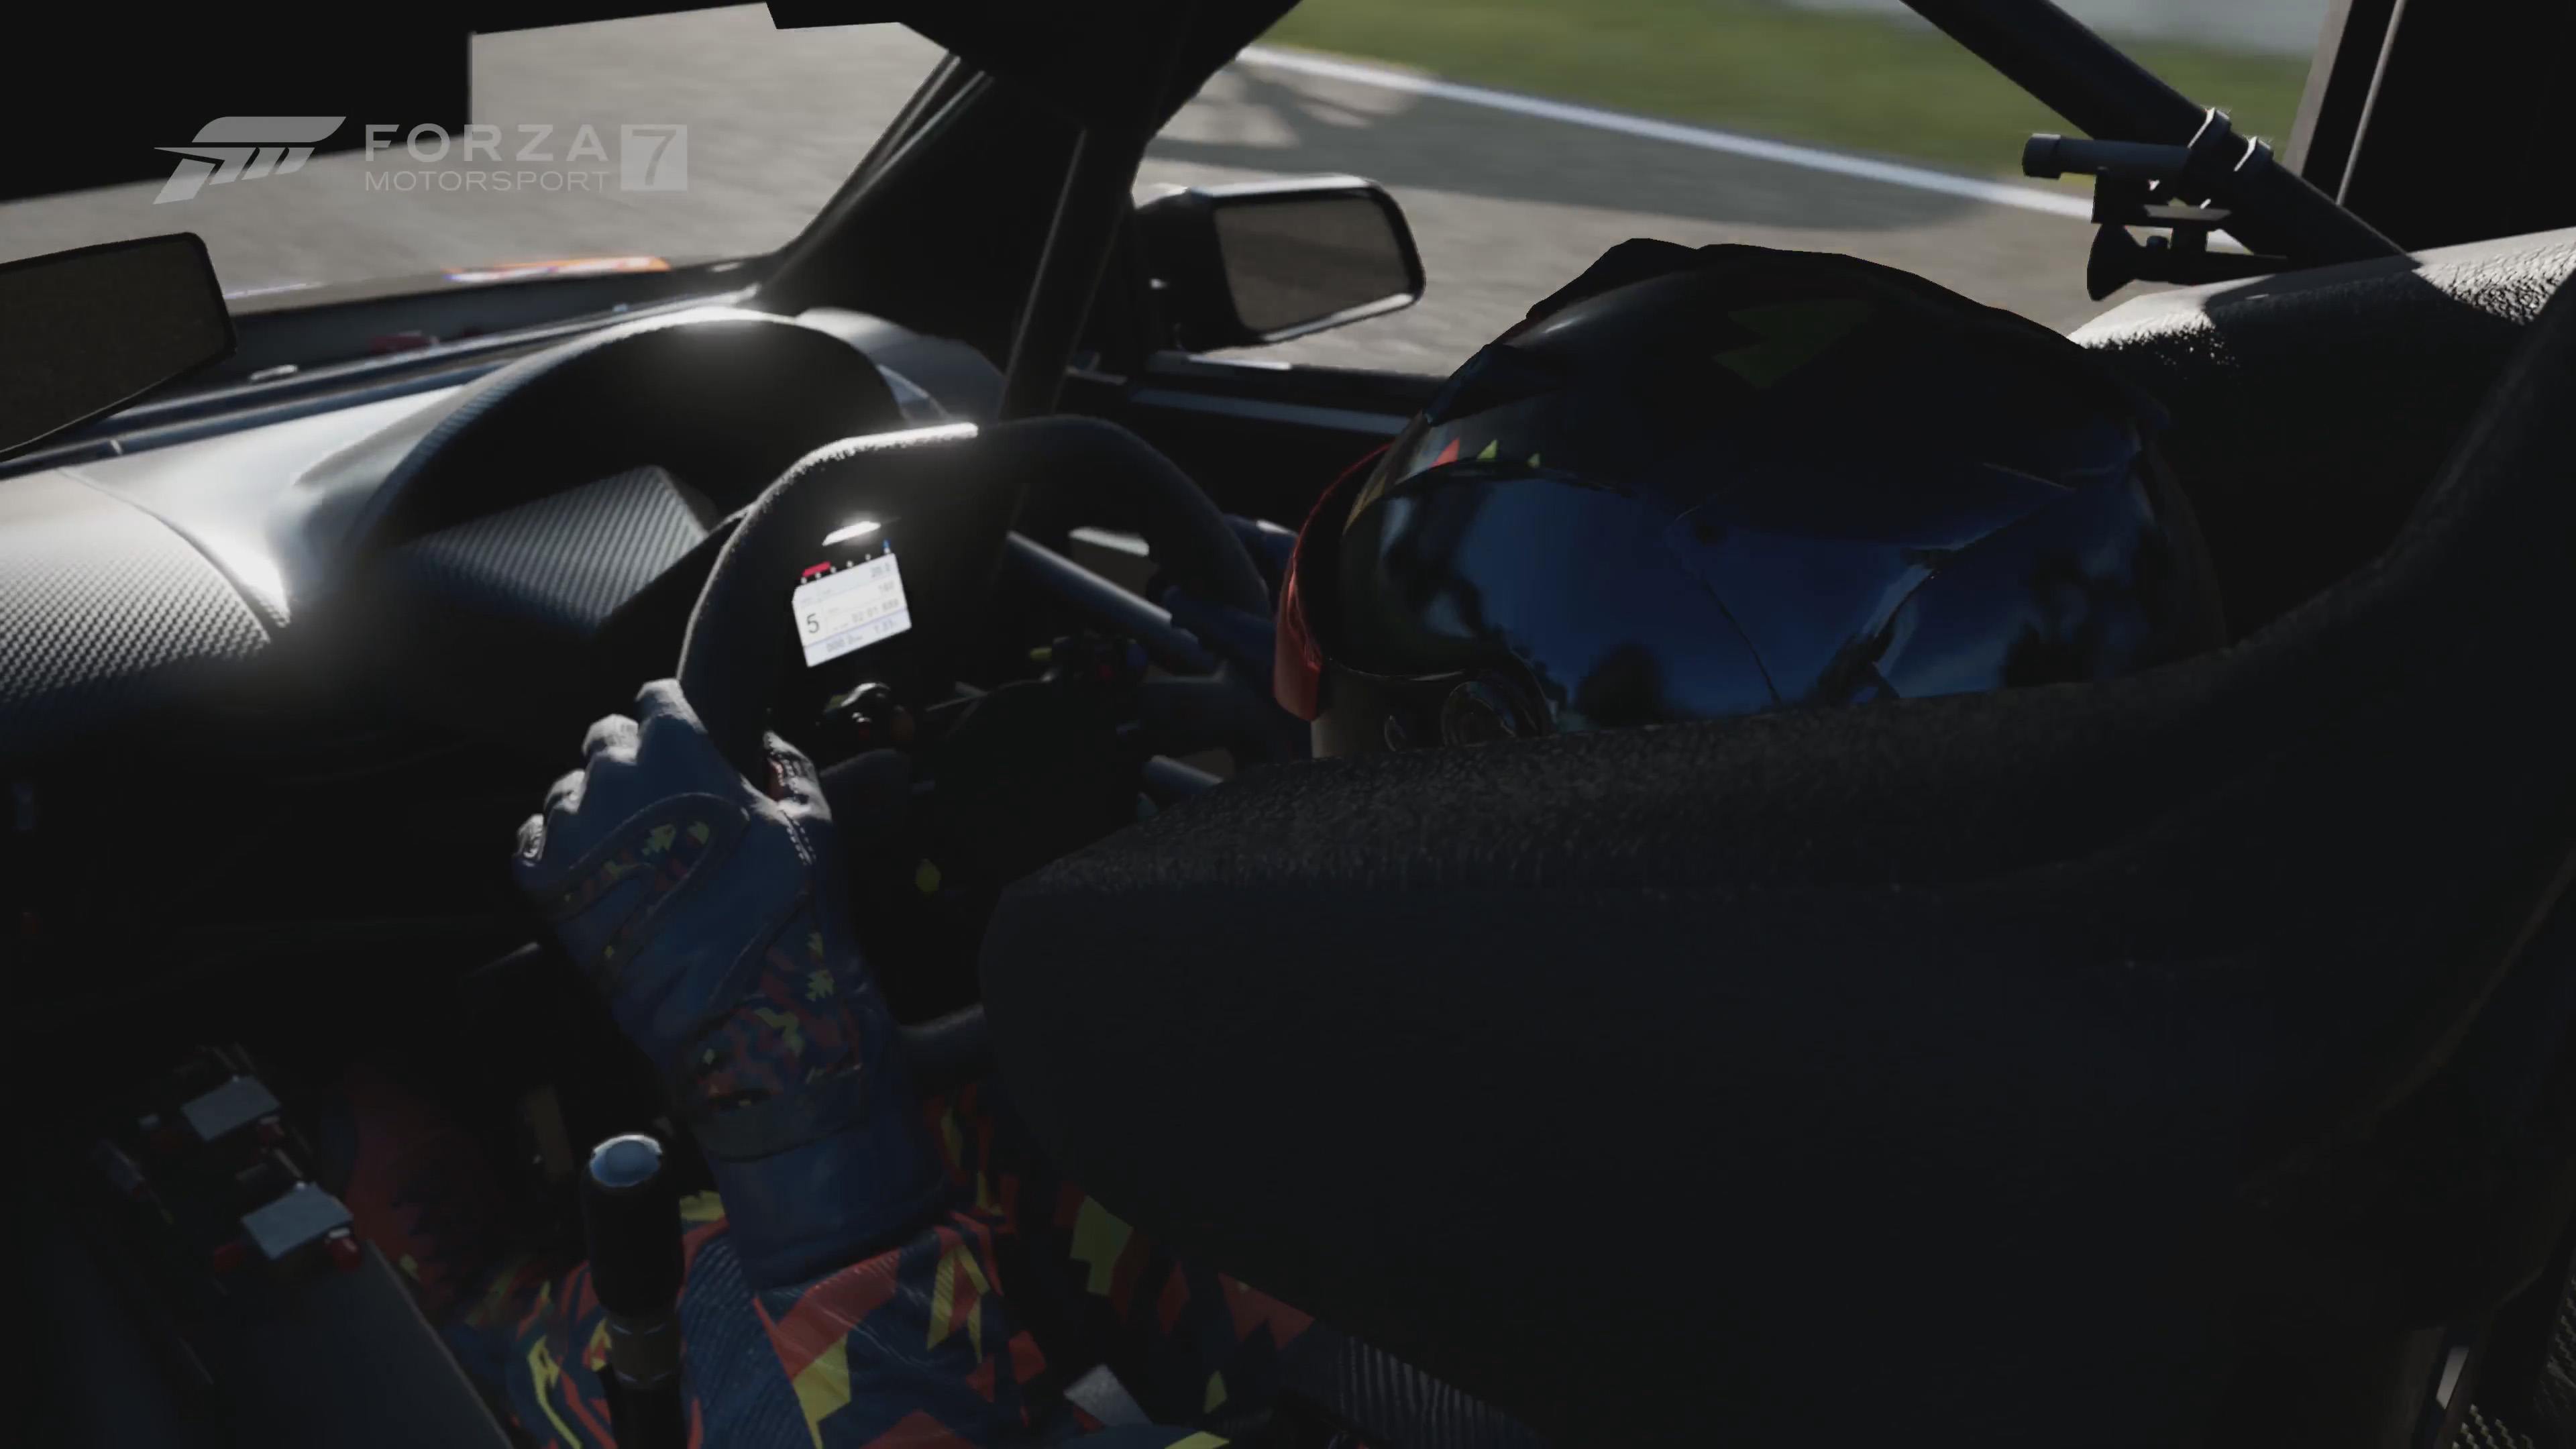 video game, car, cockpit, forza motorsport 7